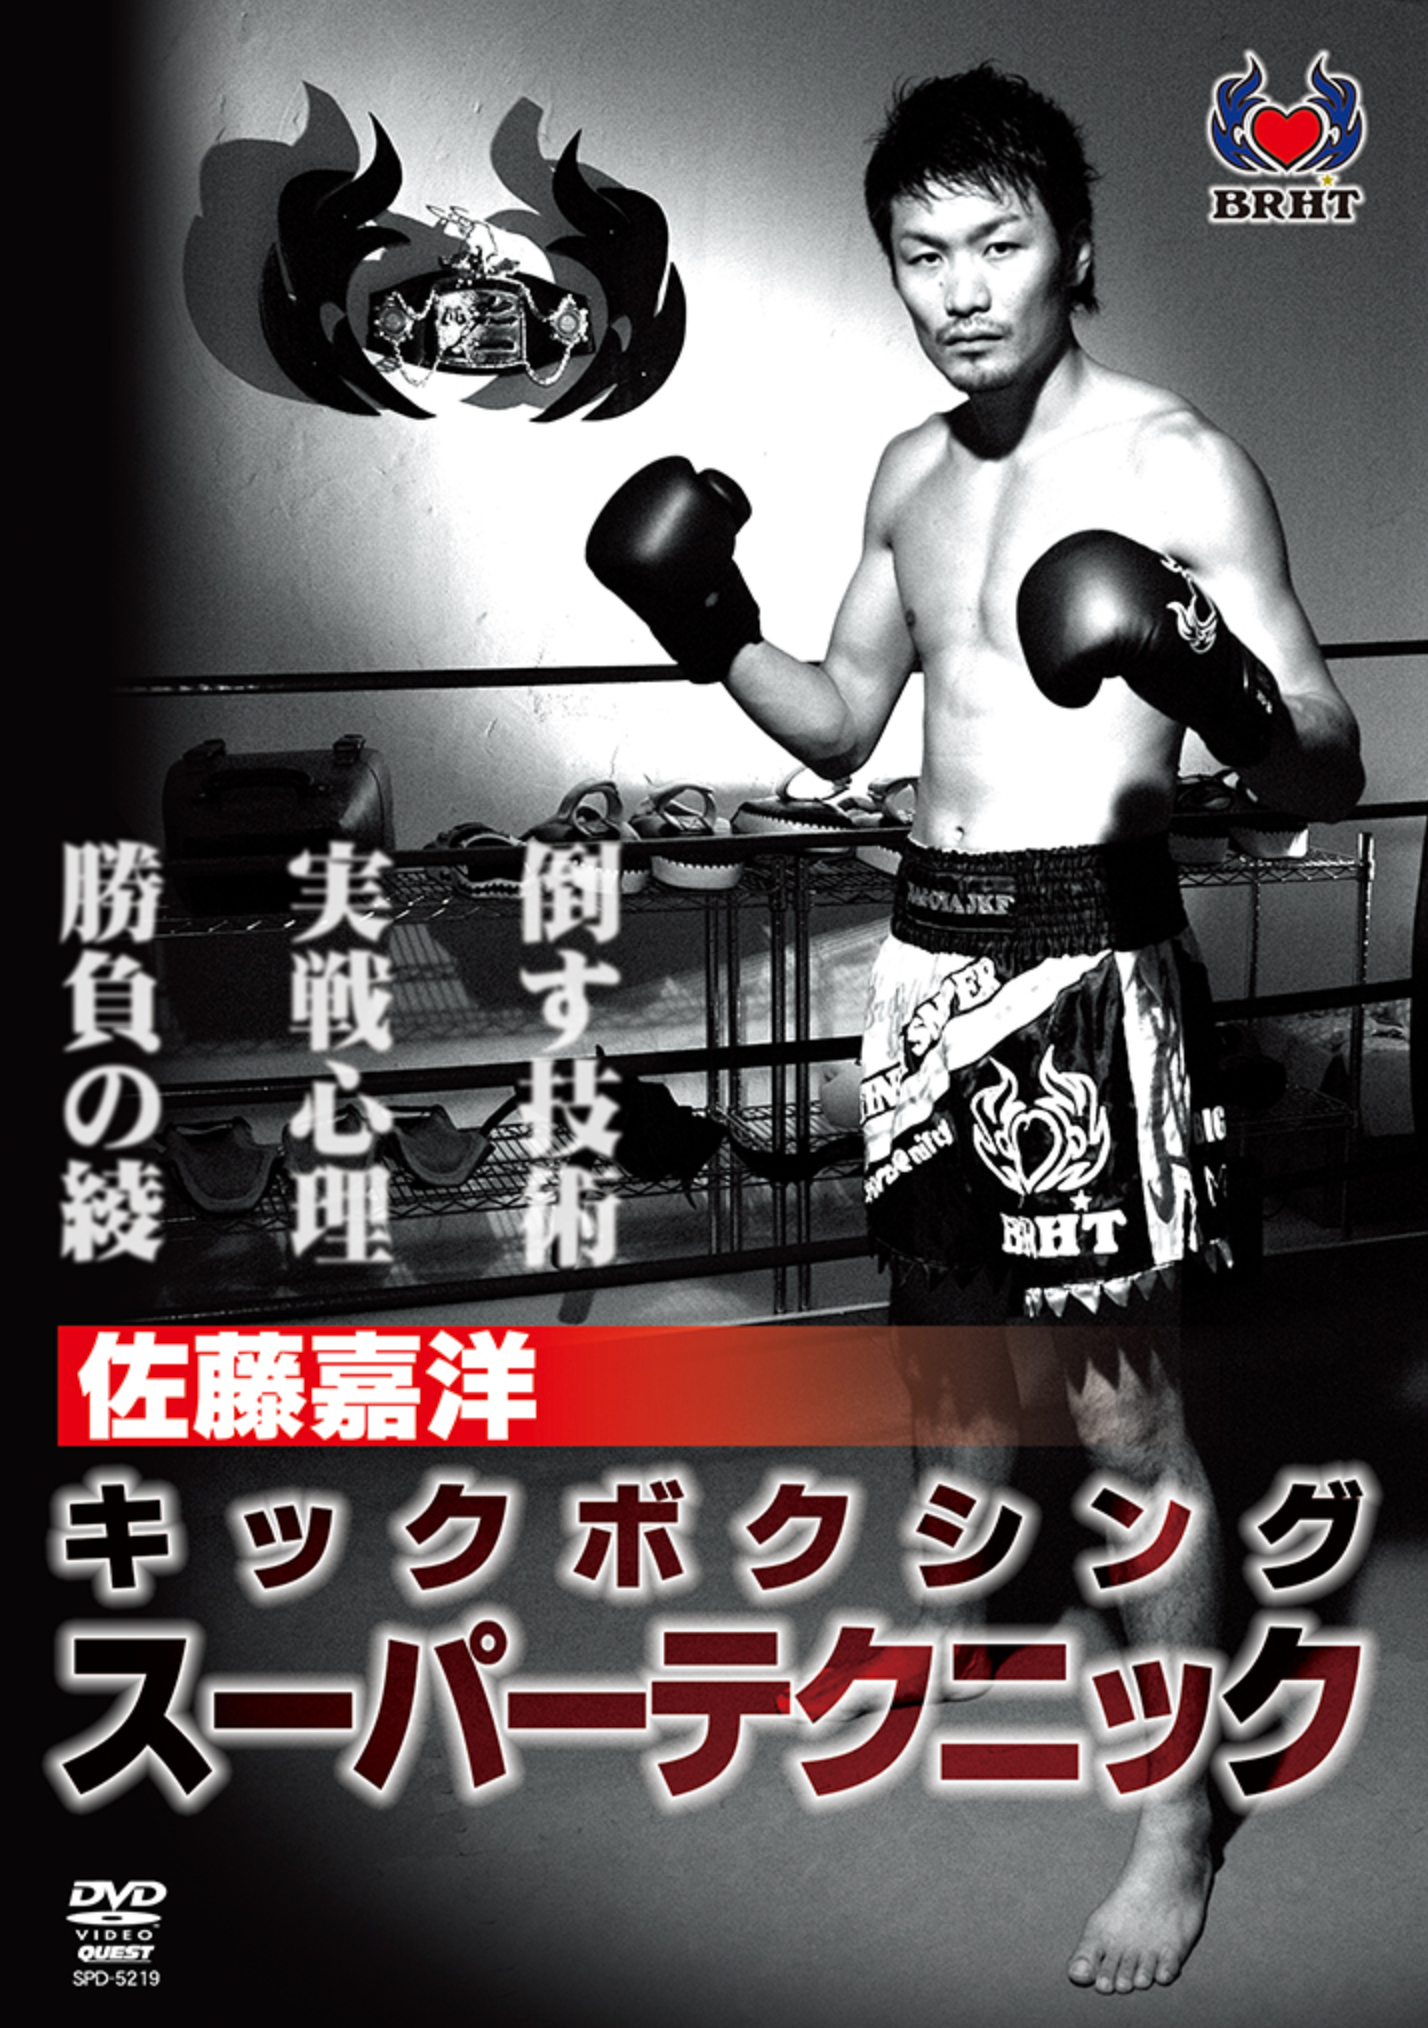 Super Kickboxing Techniques DVD with Yoshihiro Sato - Budovideos Inc